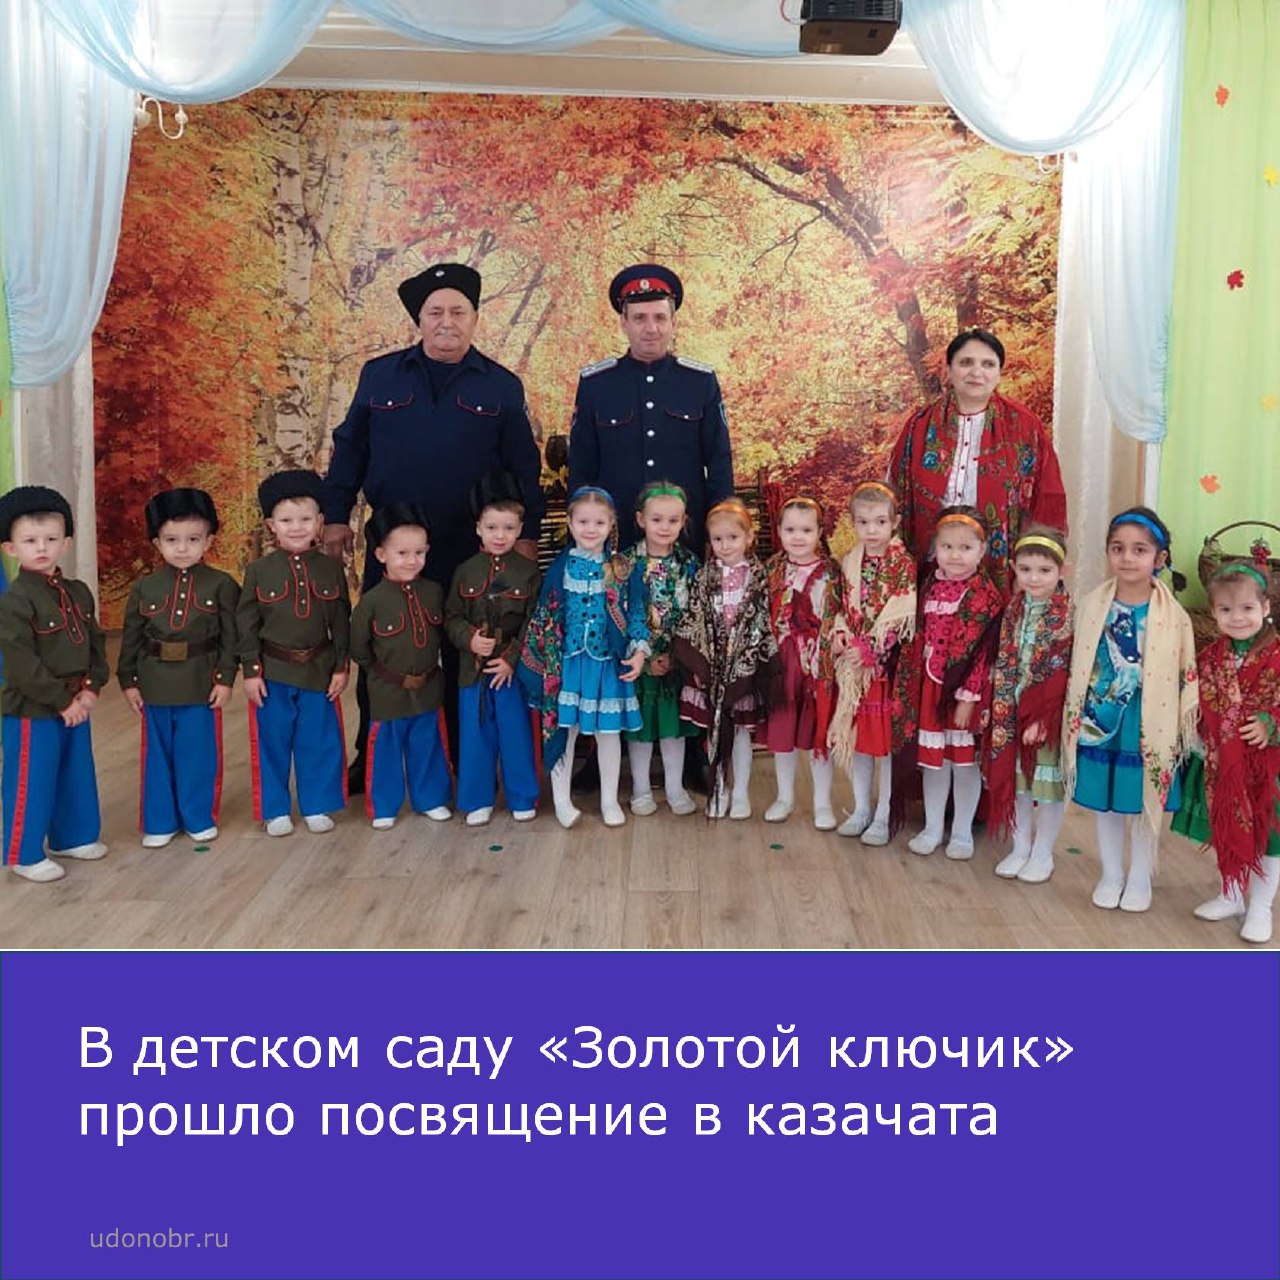 В детском саду «Золотой ключик» прошло «Посвящение в казачата».